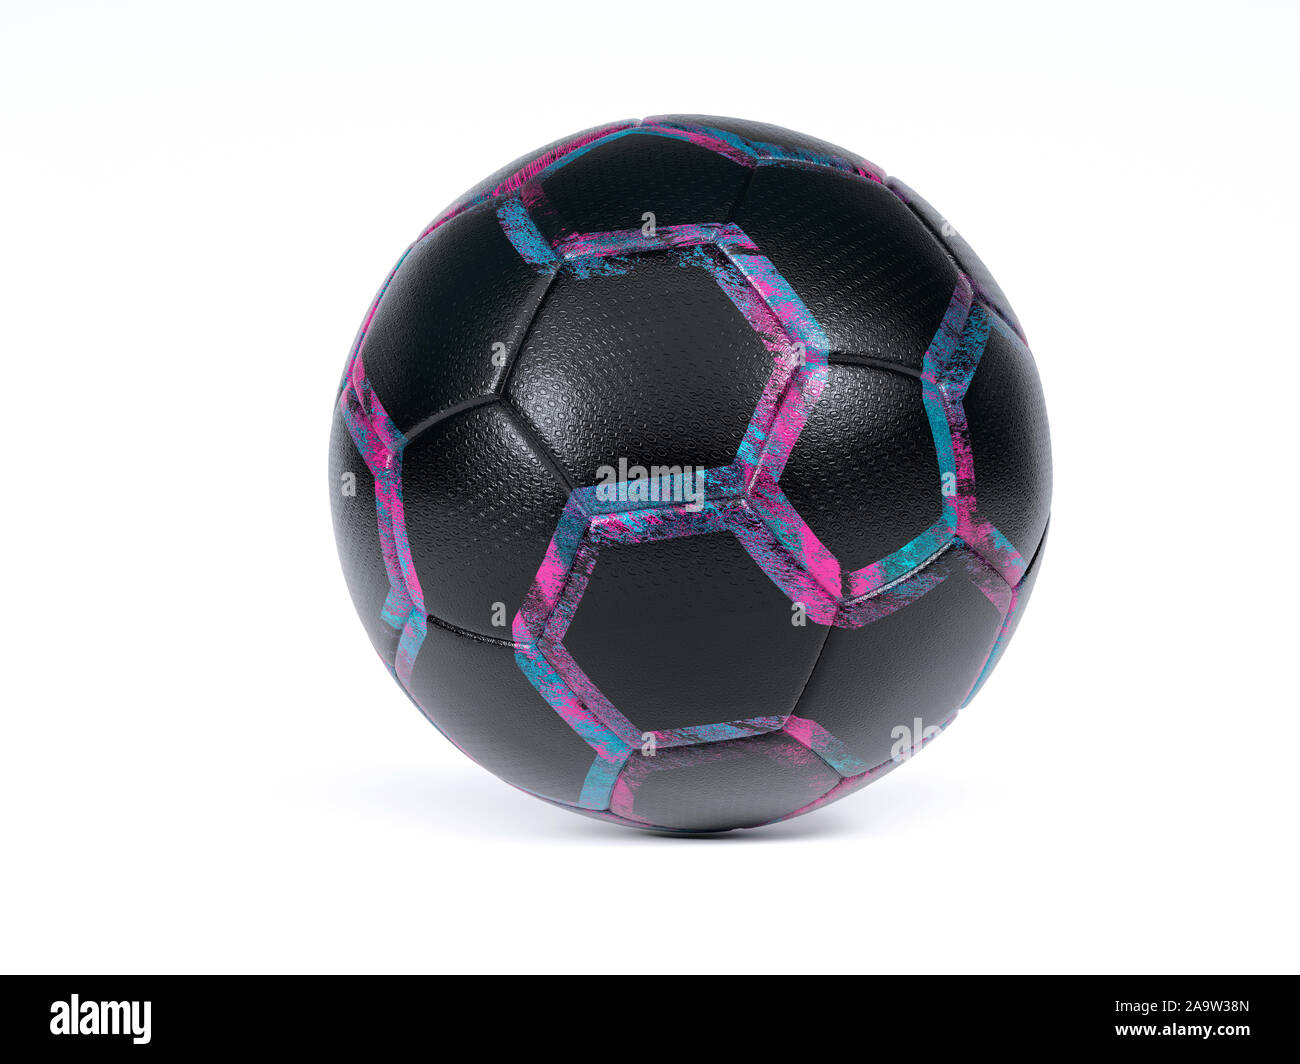 Texture noire décorée de football ou soccer ball en surbrillance sur blanc pour souligner le motif pentagonal violet avec copie espace ci-dessous Banque D'Images